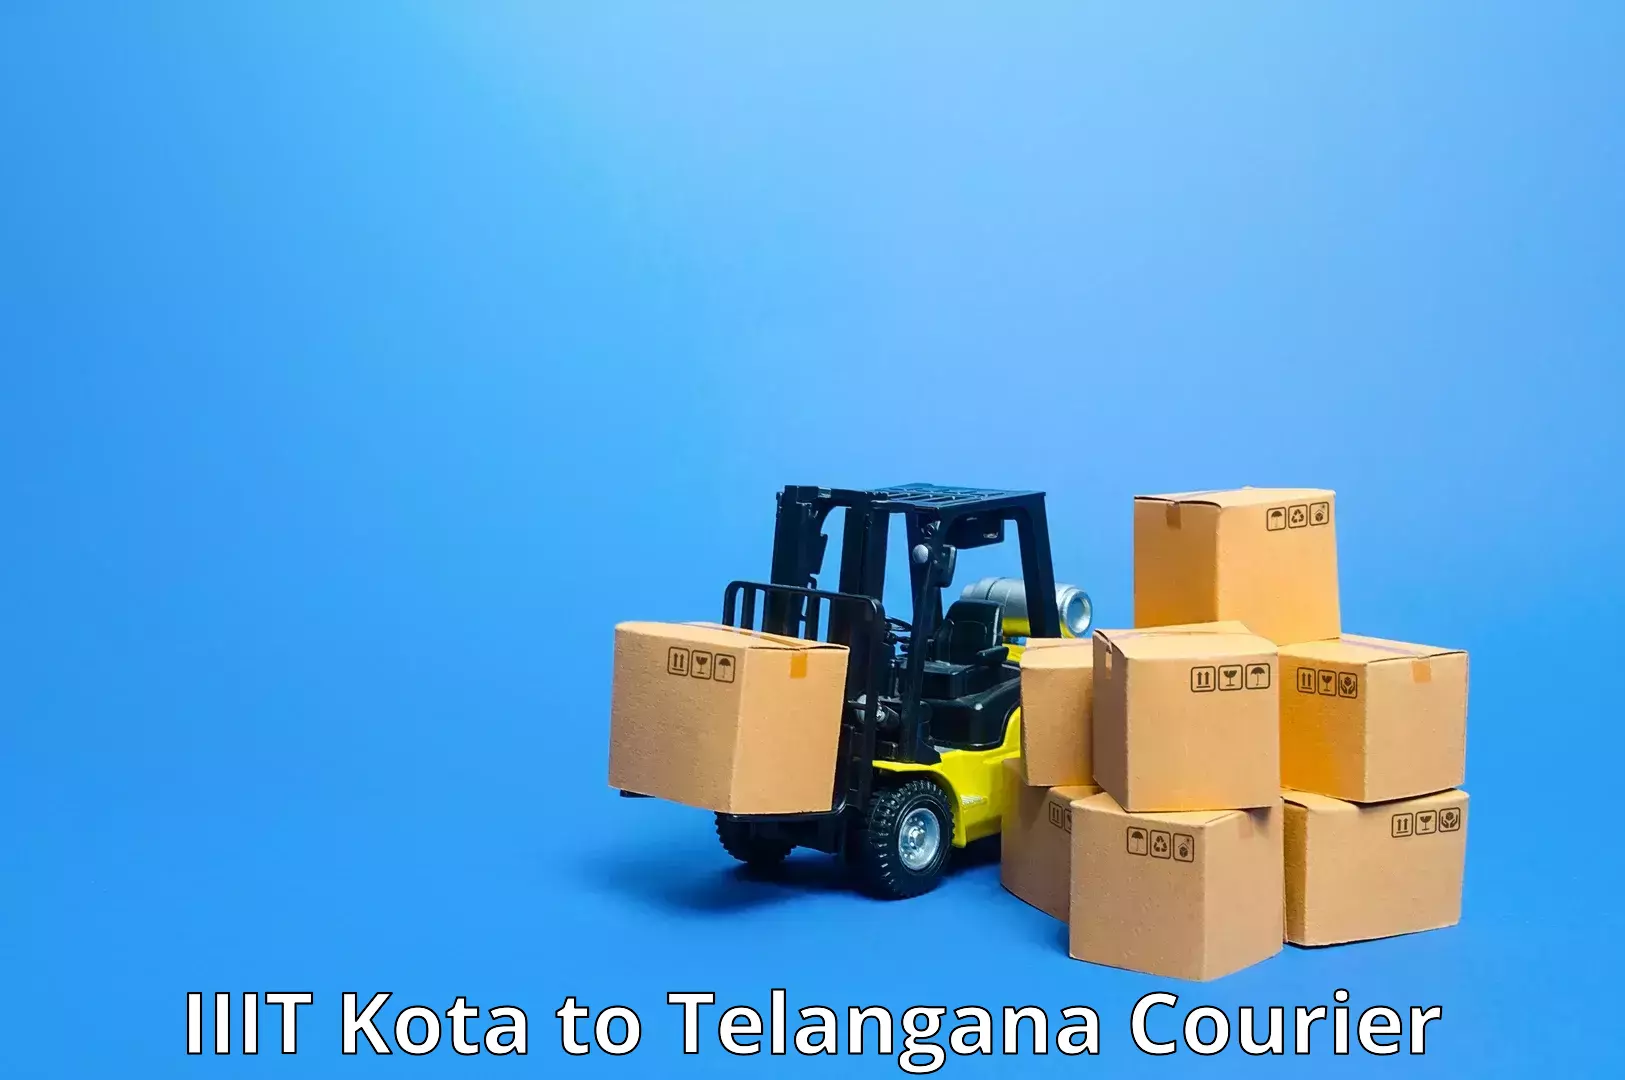 Express delivery solutions in IIIT Kota to Chegunta